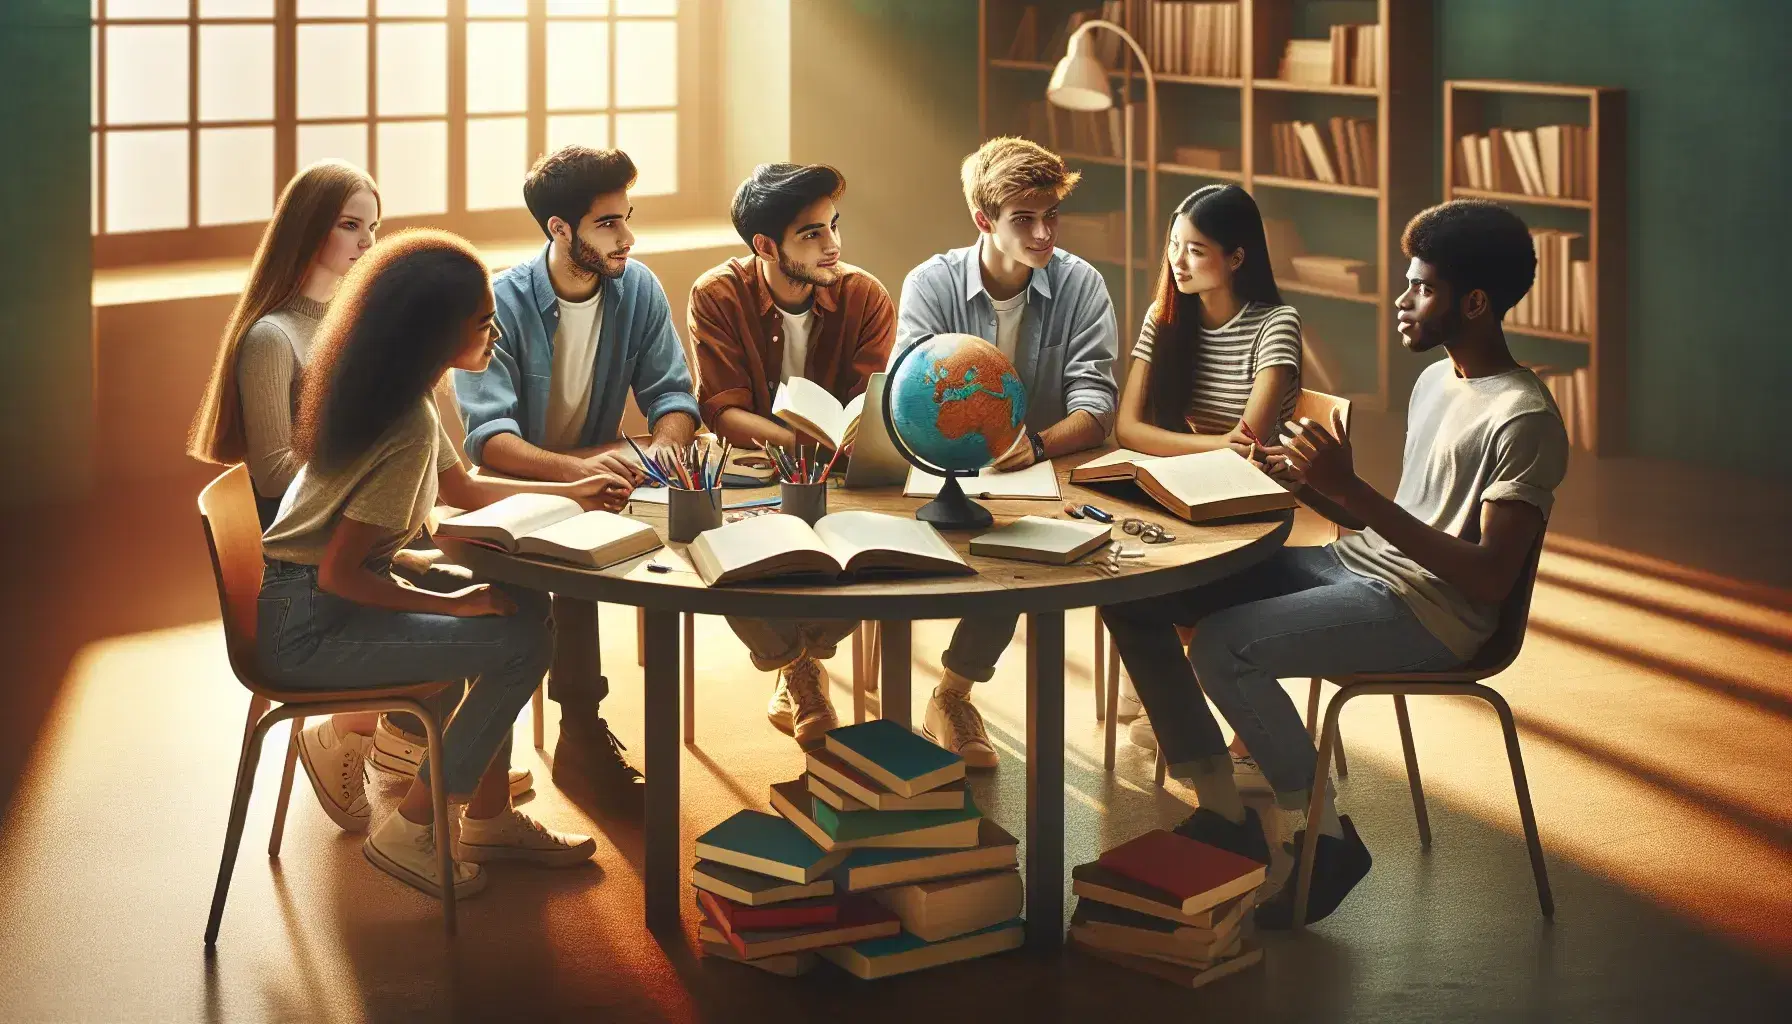 Grupo diverso de estudiantes debatiendo en torno a una mesa redonda con libros, un globo y un portátil en una sala iluminada naturalmente.